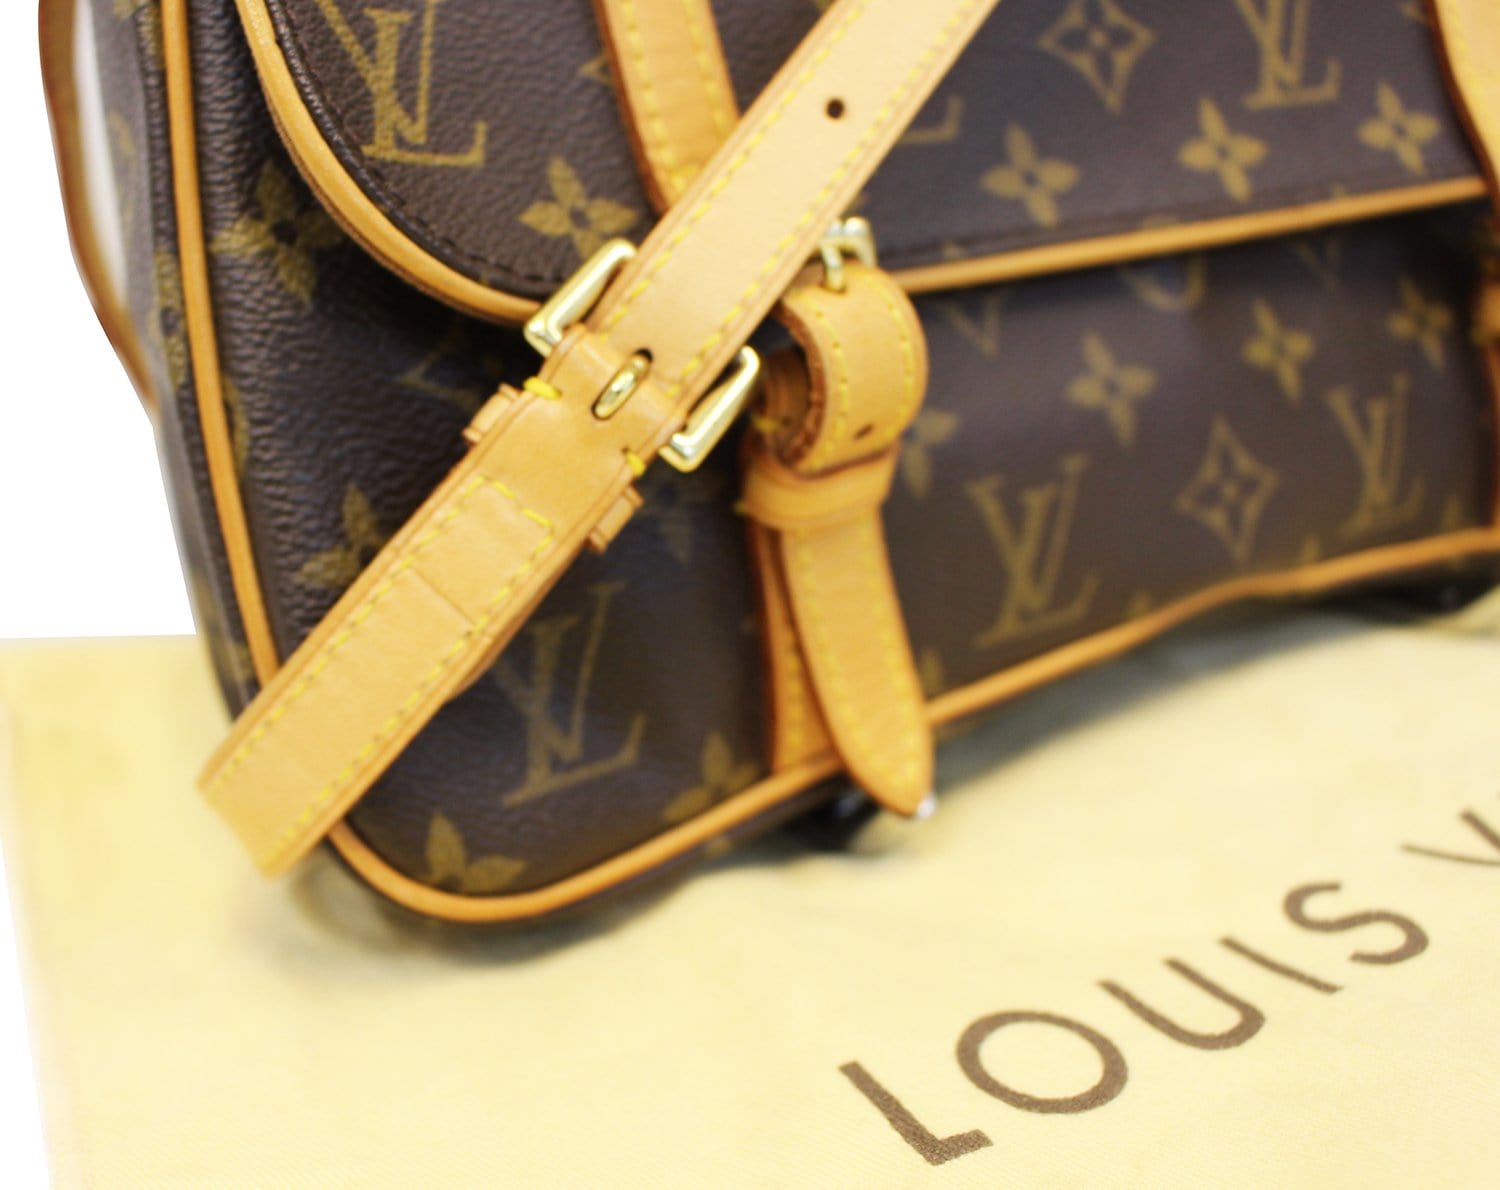 Louis Vuitton Monogram Canvas Marelle Sac A Dos Convertible Bag